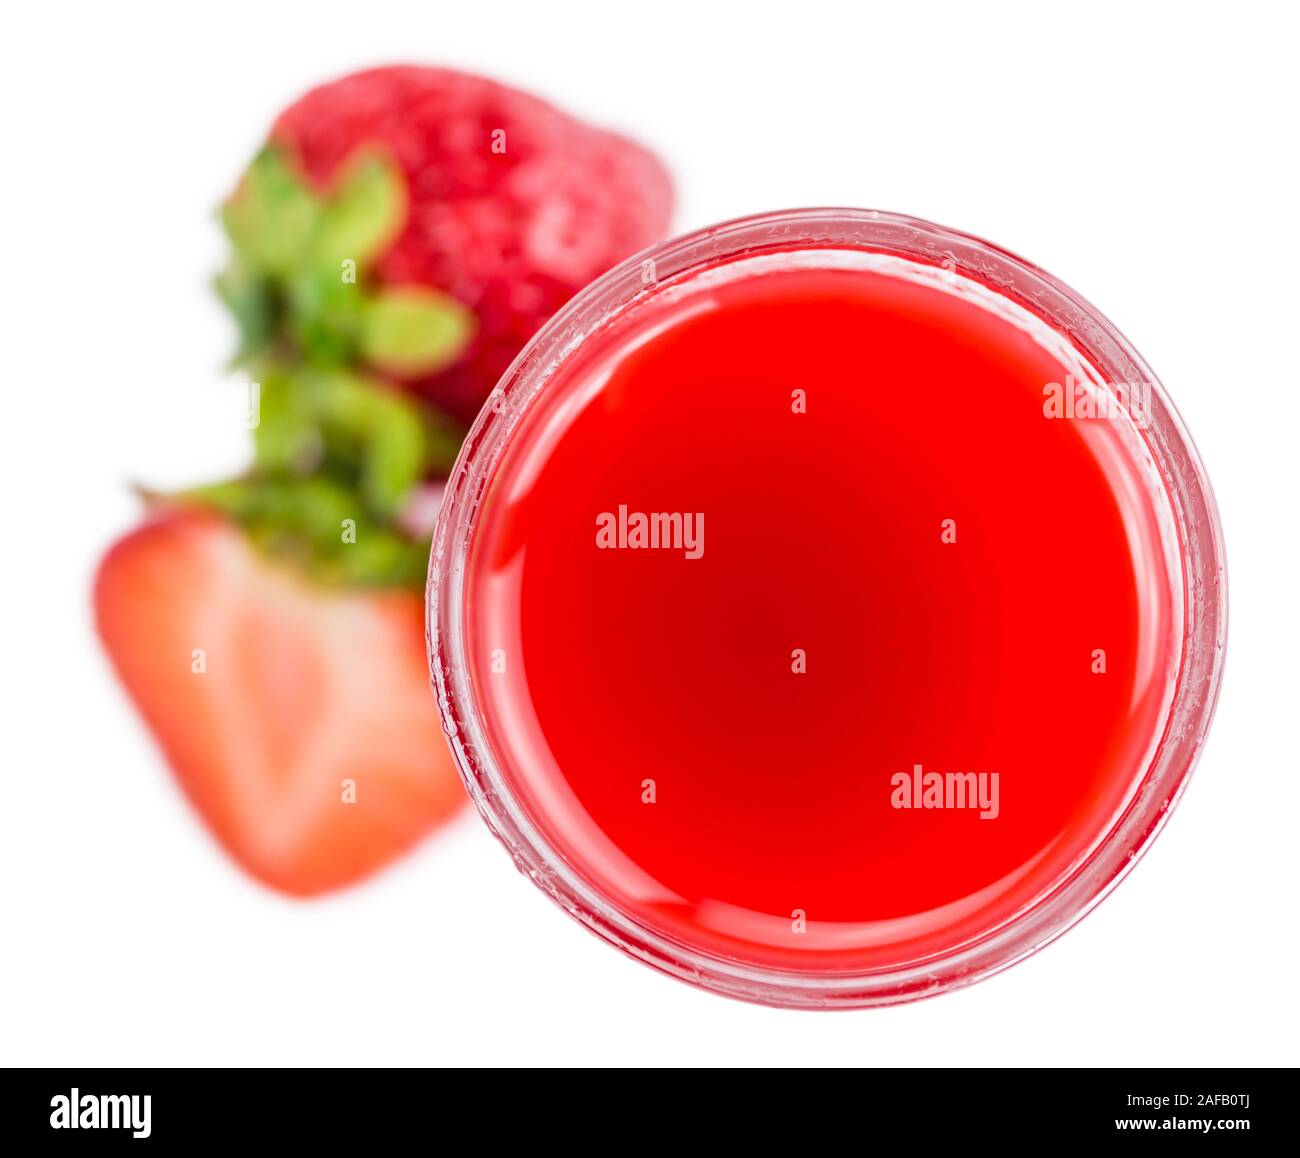 Liqueur de fraise frais isolé sur fond blanc ; close-up shot Banque D'Images